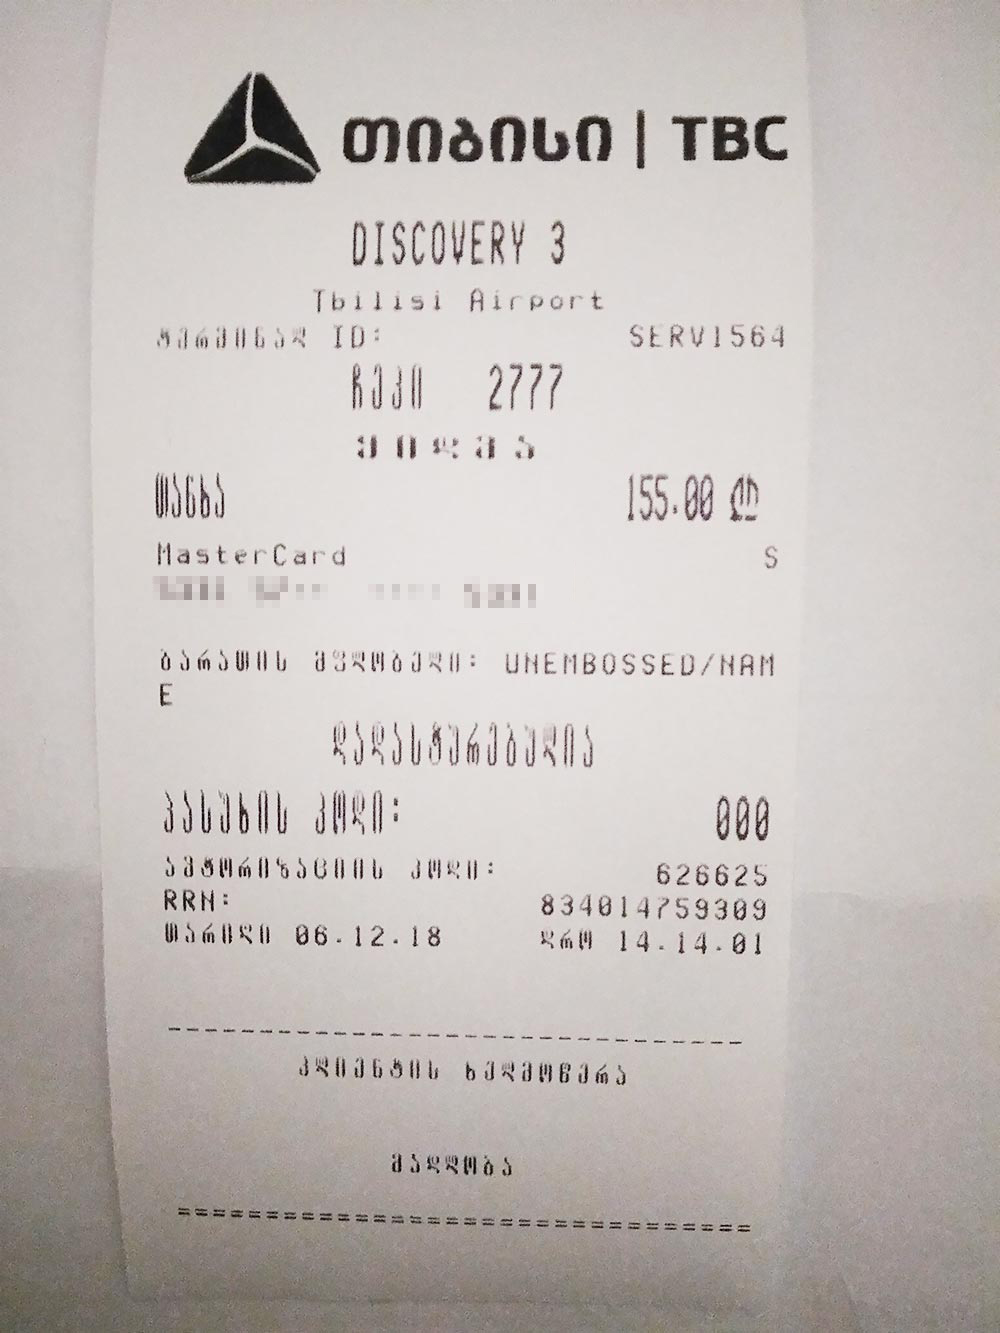 Чек об оплате регистрации на рейс Тбилиси — Казань. Регистрация стоила 155 лари — почти 4 тысячи рублей